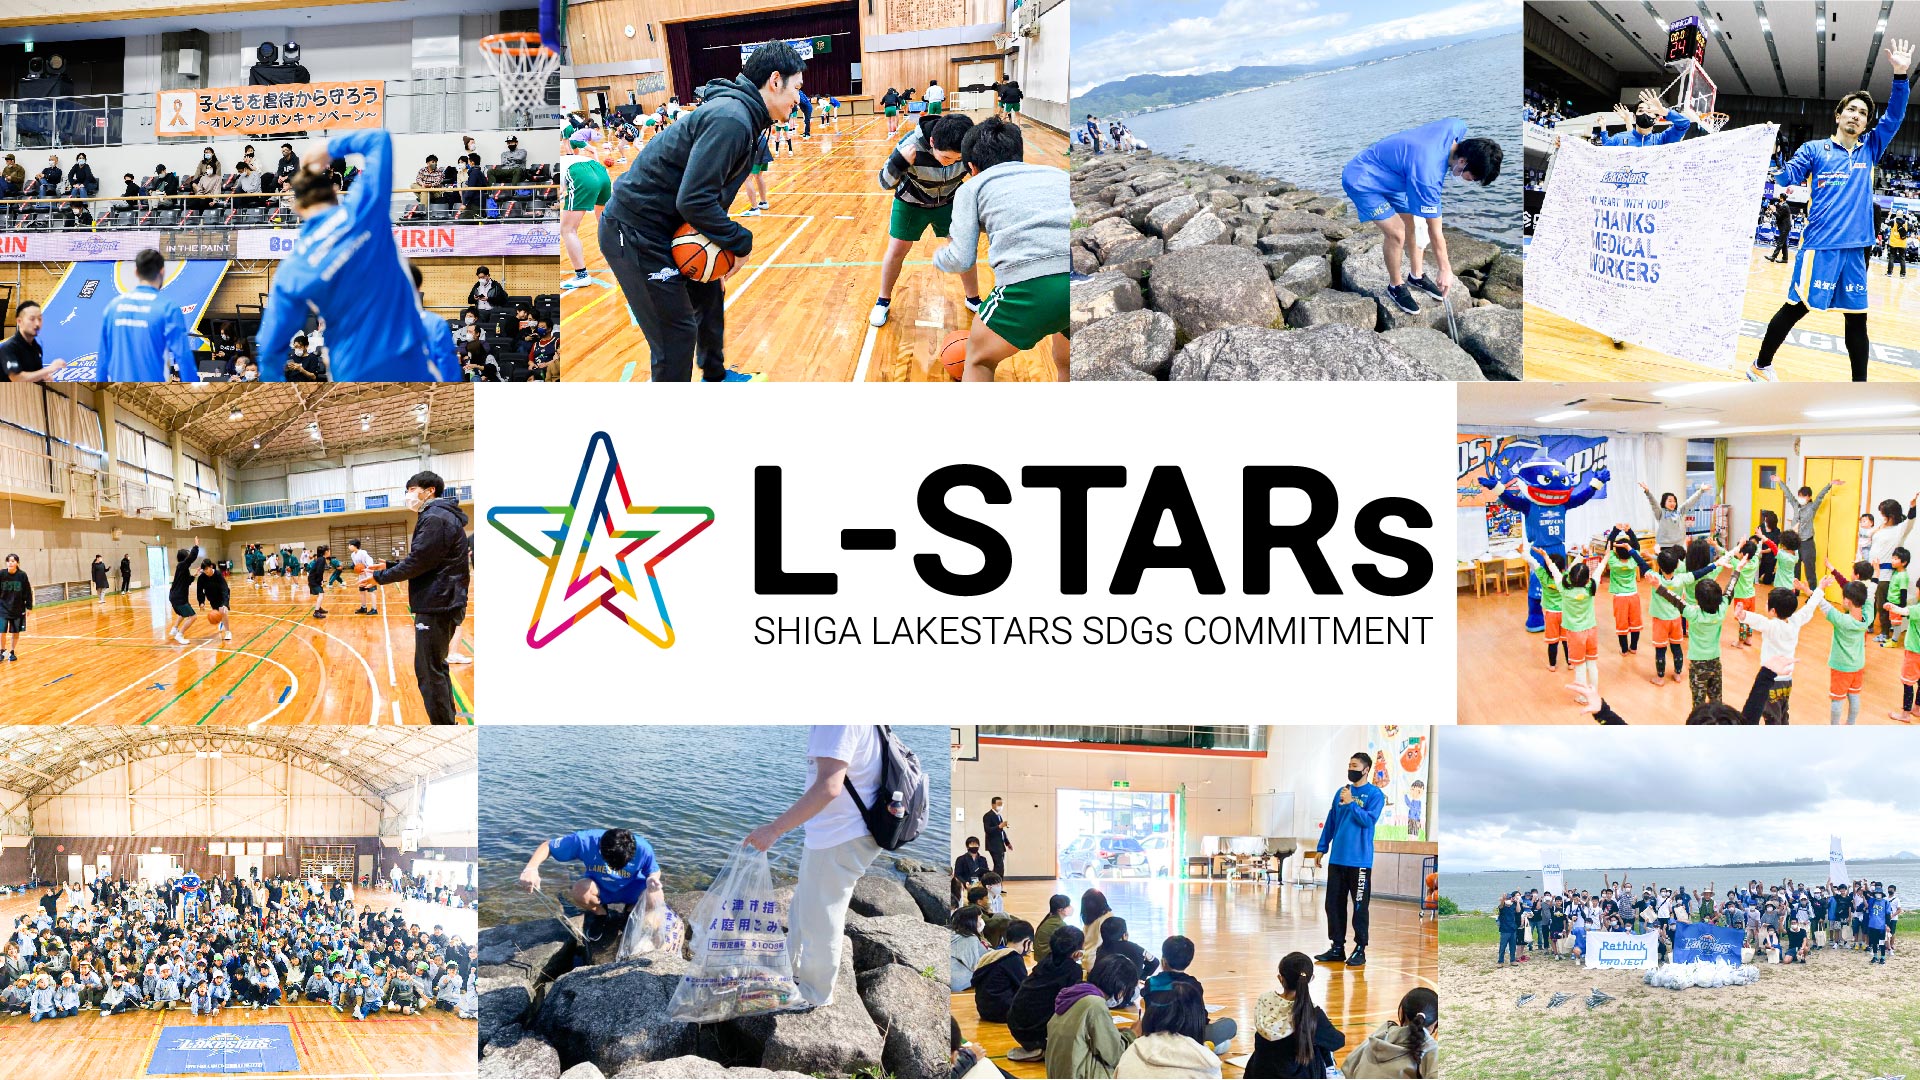 滋賀レイクスターズ版sdgs宣言 L Stars Commitment 始動 株式会社滋賀レイクスターズのプレスリリース